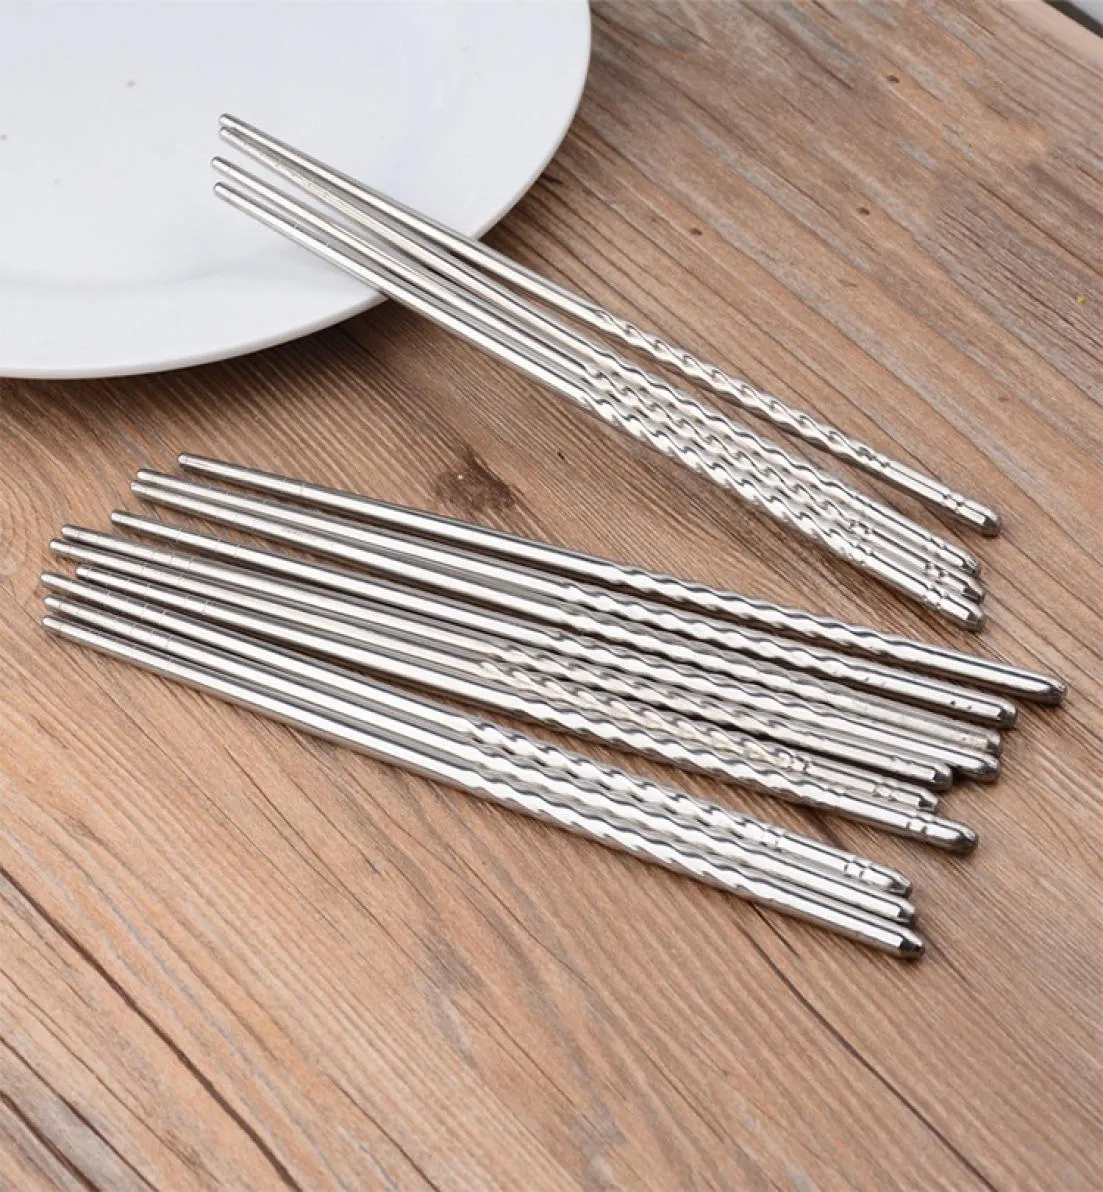 Drop 201 Stainless Steel Chopstick 22cm Korean BBQ Chopsticks Kitchen Rrestaurant Bar Home Dinnerware Flatware for Party D3397154